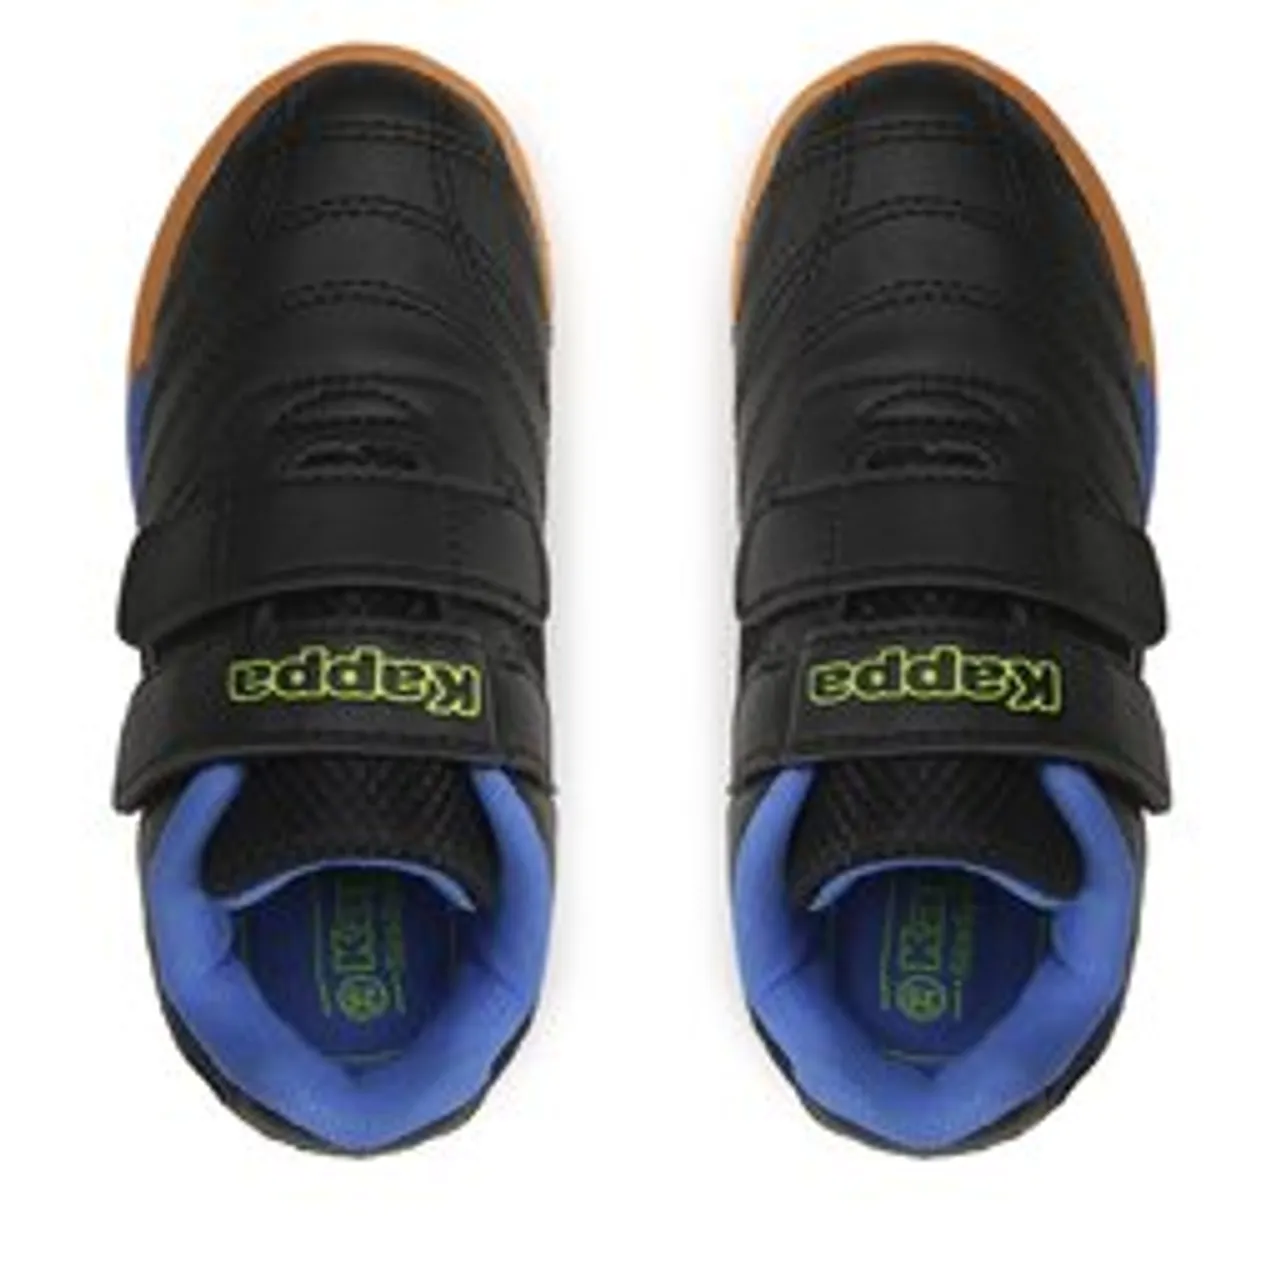 Sneakers Kappa 260509BCK Black/Blue 1160